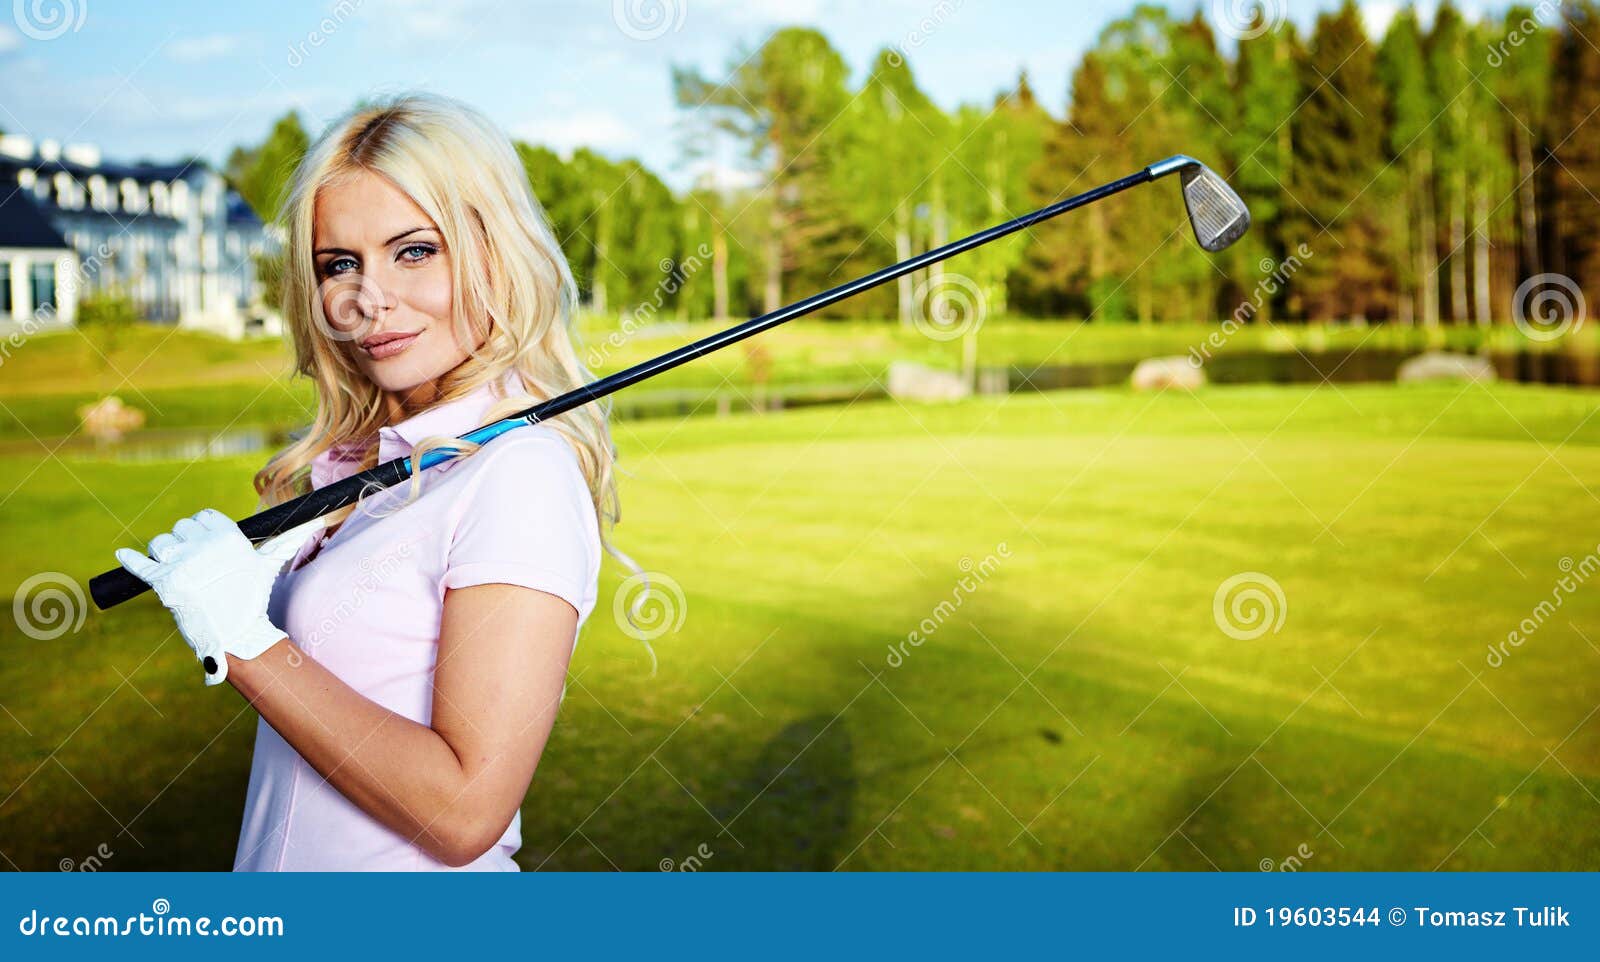 Blonde Golf 115